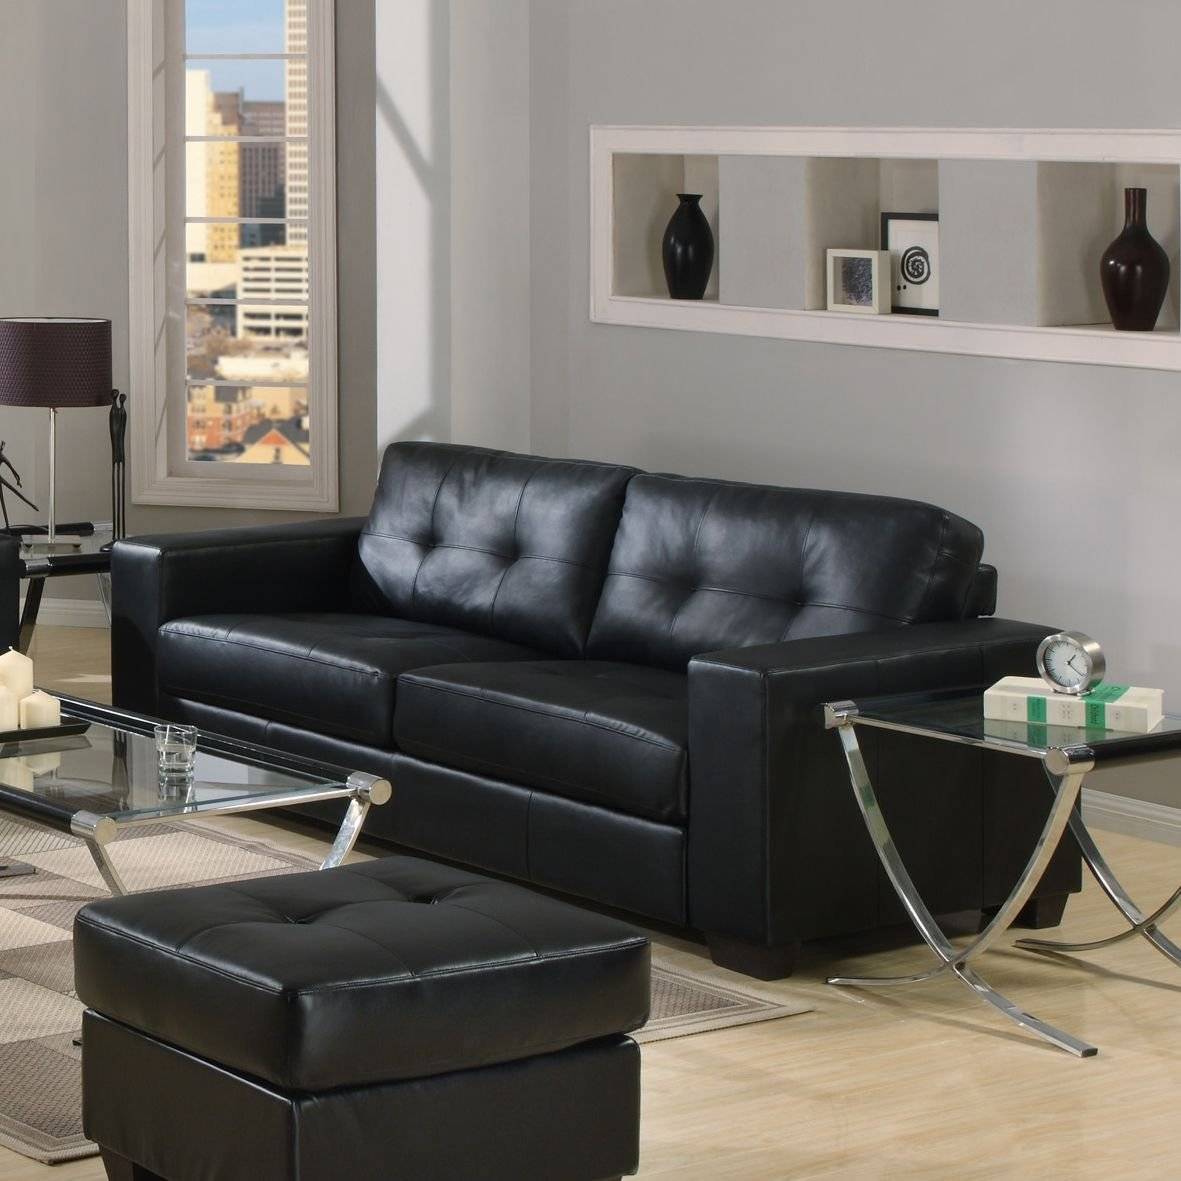 Черный диван в интерьере: материалы обивки, оттенки, формы, идеи дизайна, сочетания